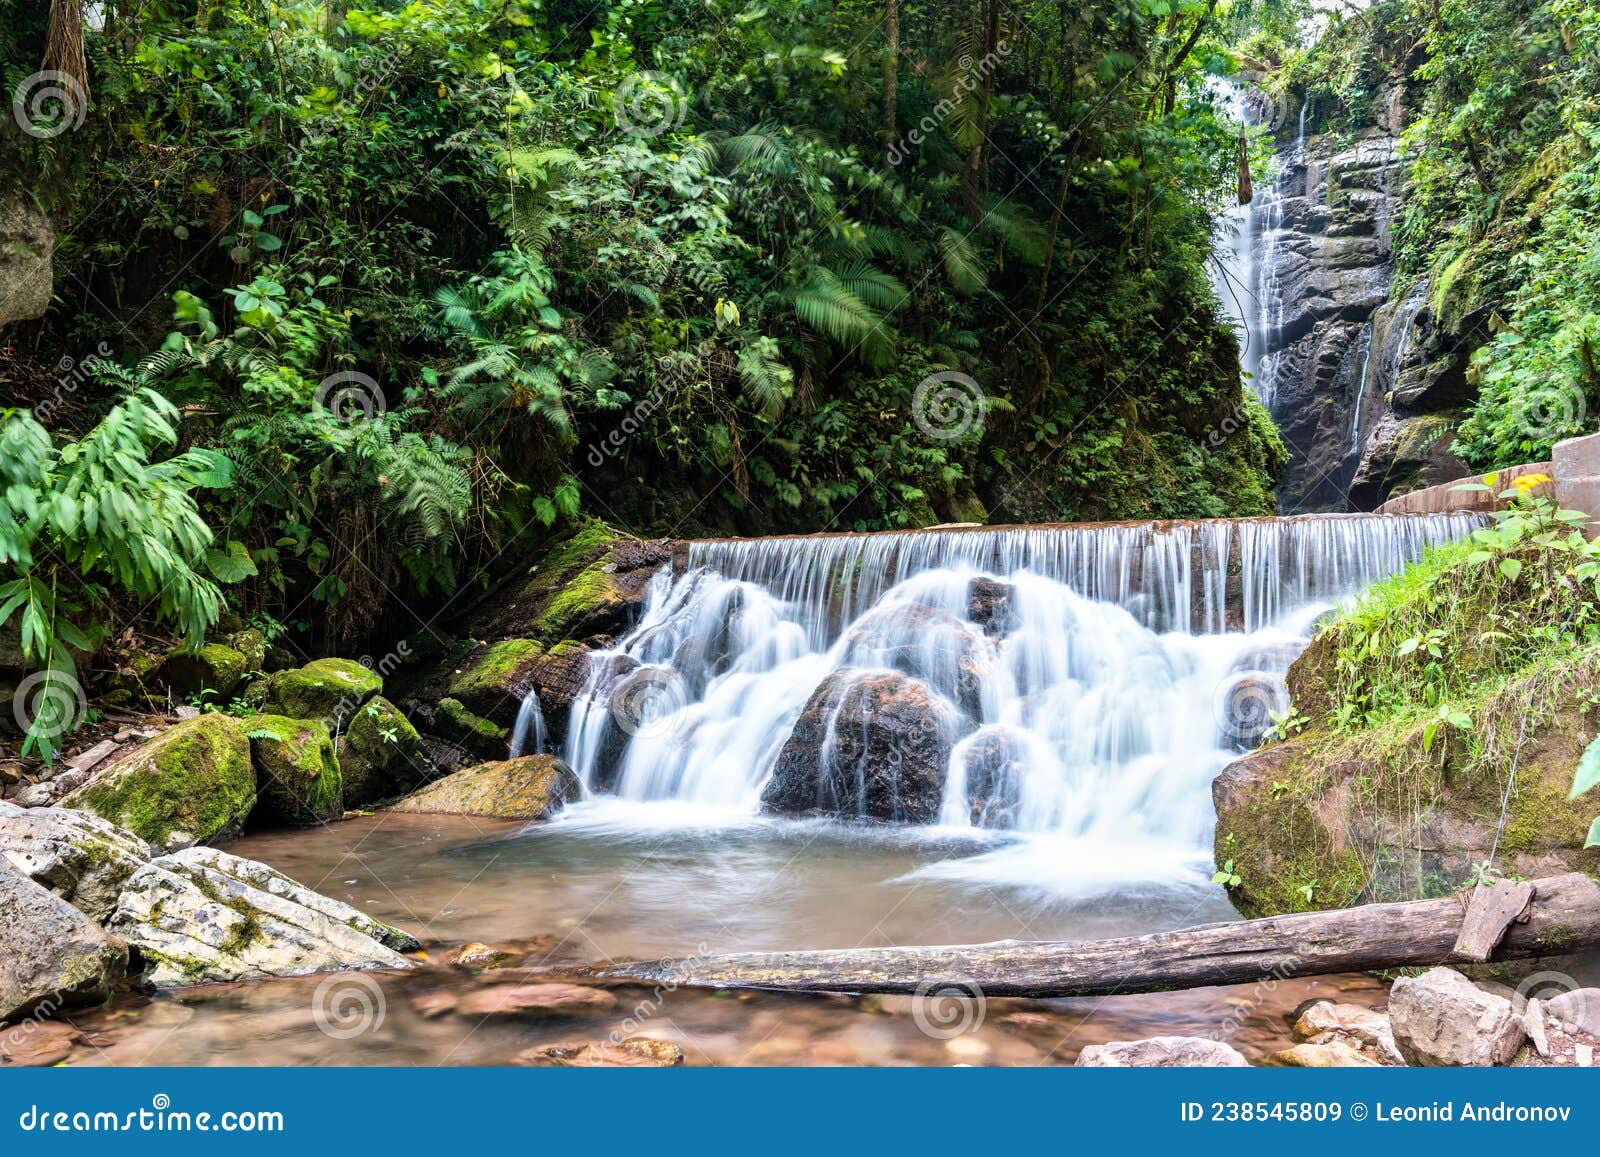 rio tigre waterfall in the jungle of oxapampa in peru